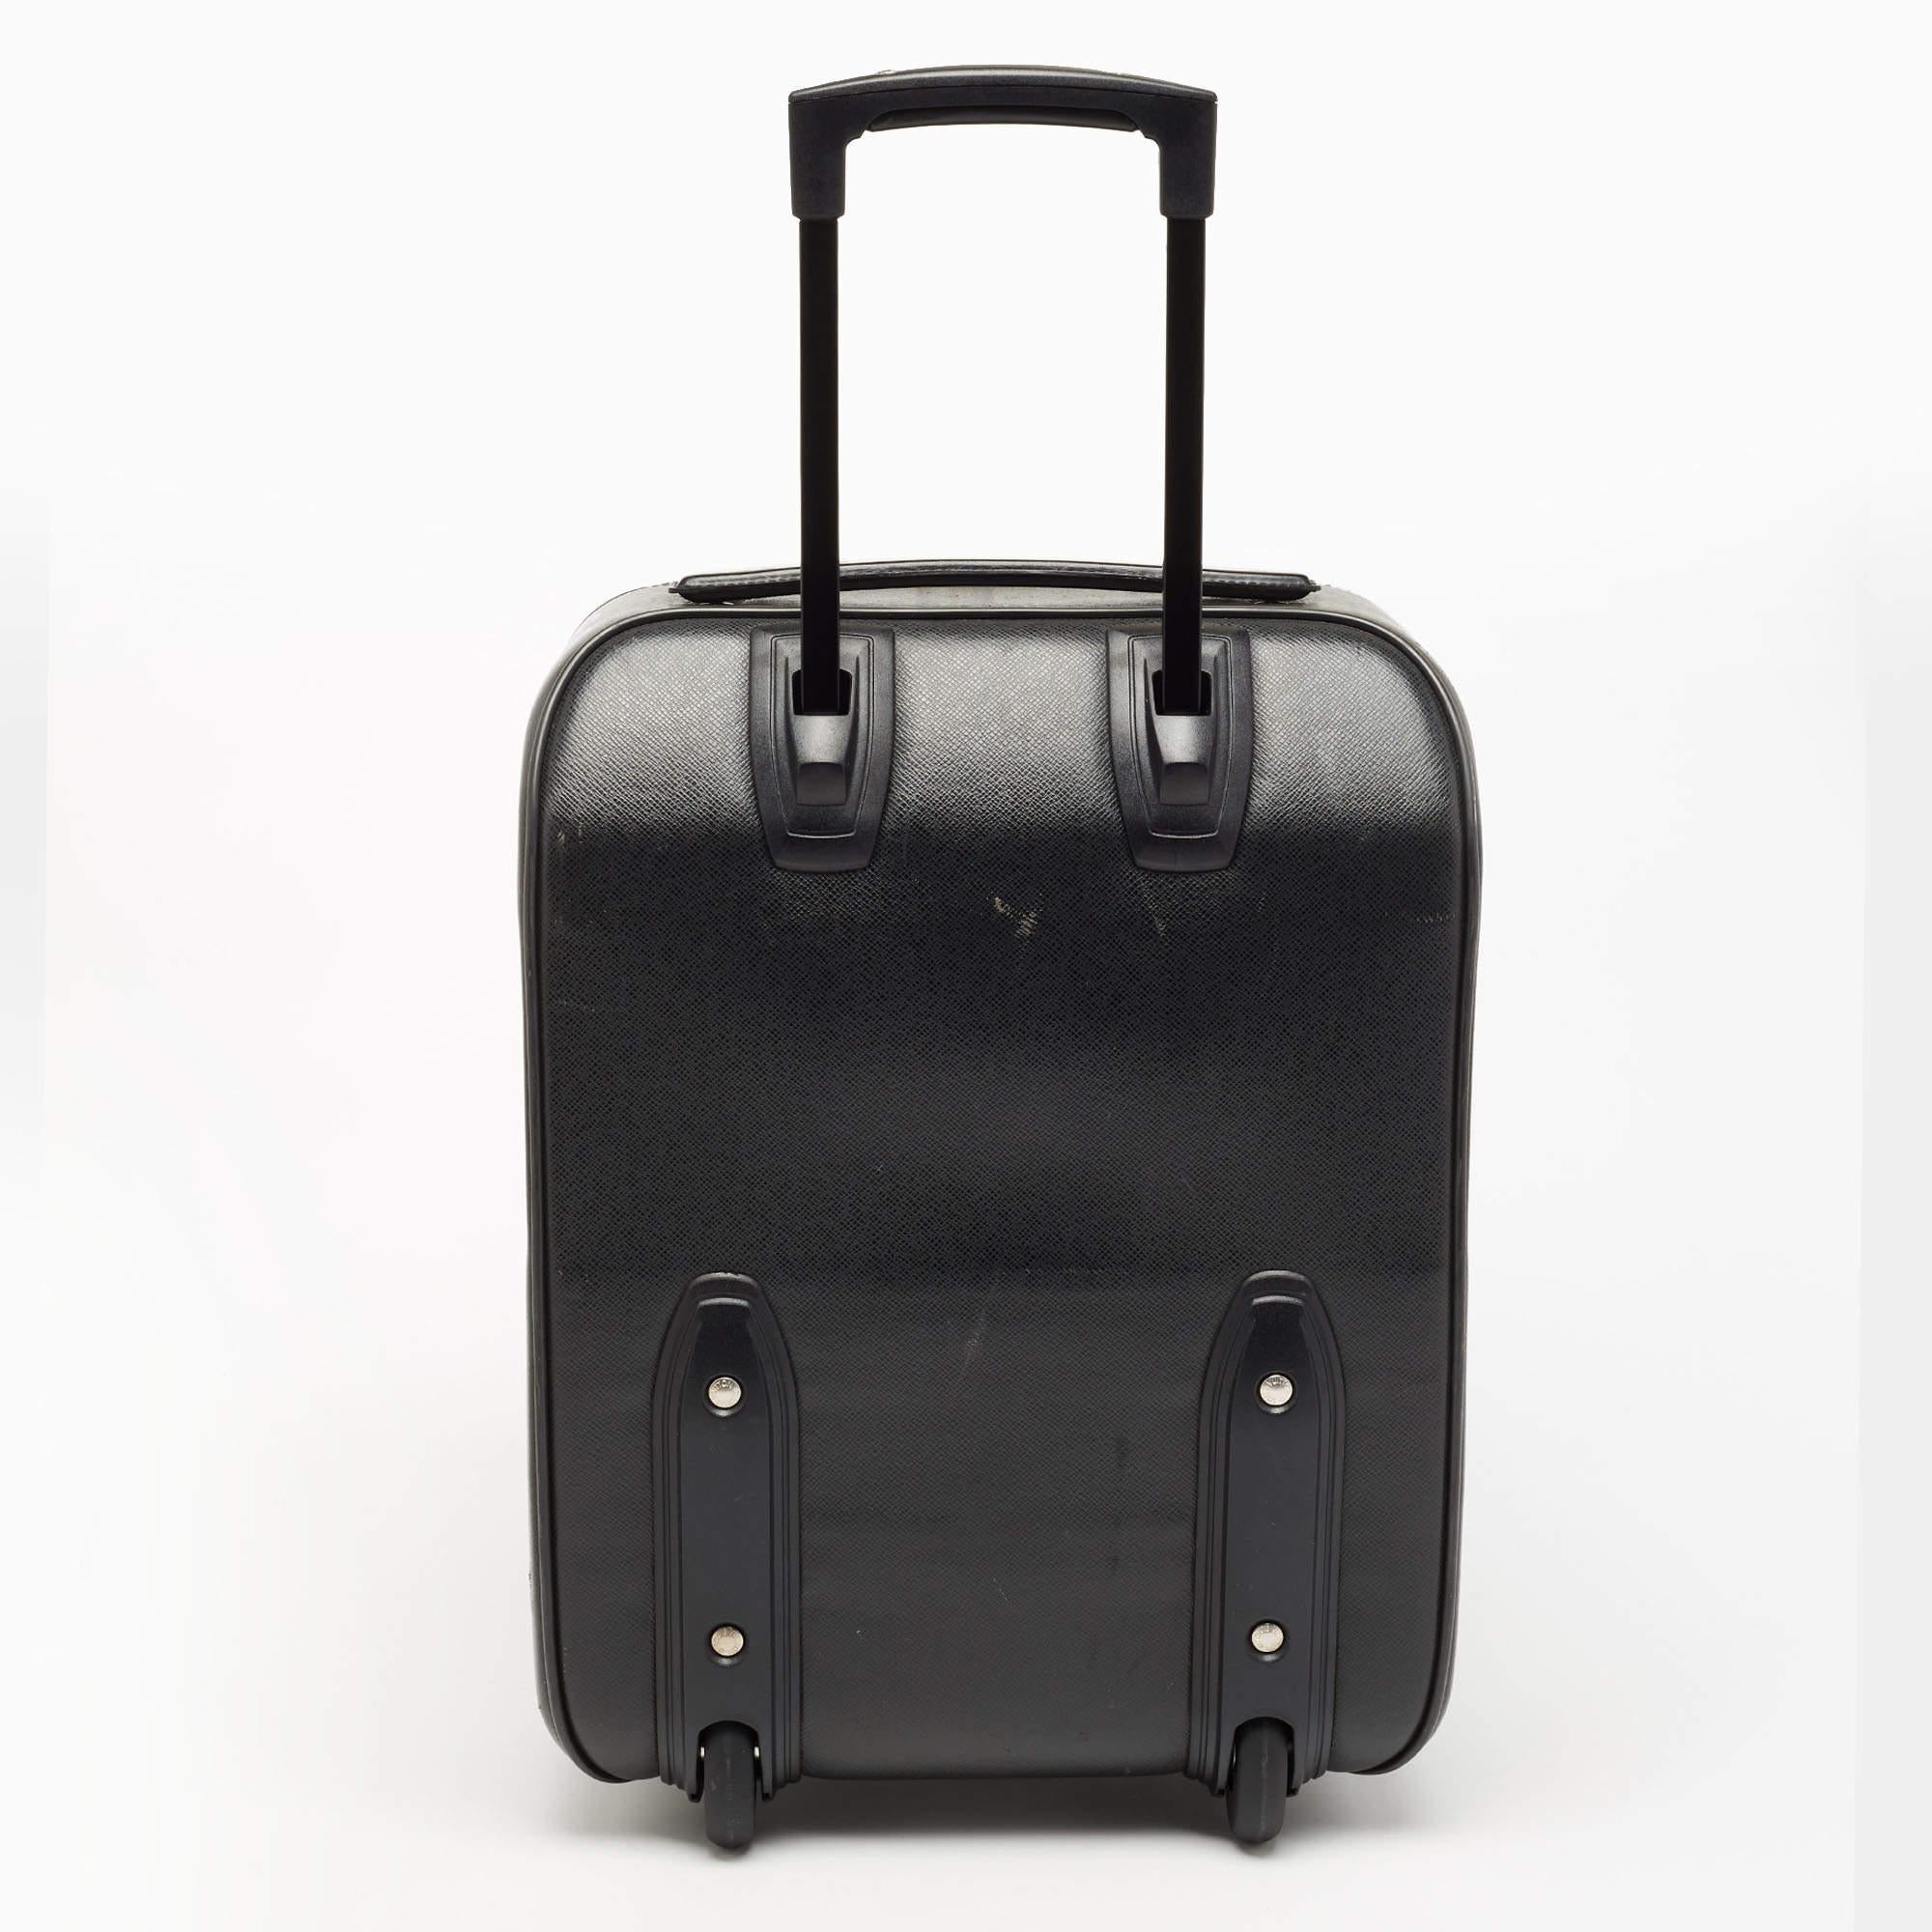 Dieses Pegase 45 Business-Gepäck von Louis Vuitton ist äußerst robust, praktisch und stilvoll für lange Reisen. Diese aus Ardoise Taiga-Leder gefertigte Gepäcktasche verfügt über silberfarbene Beschläge, einen Trolley-Griff und ein ordentliches